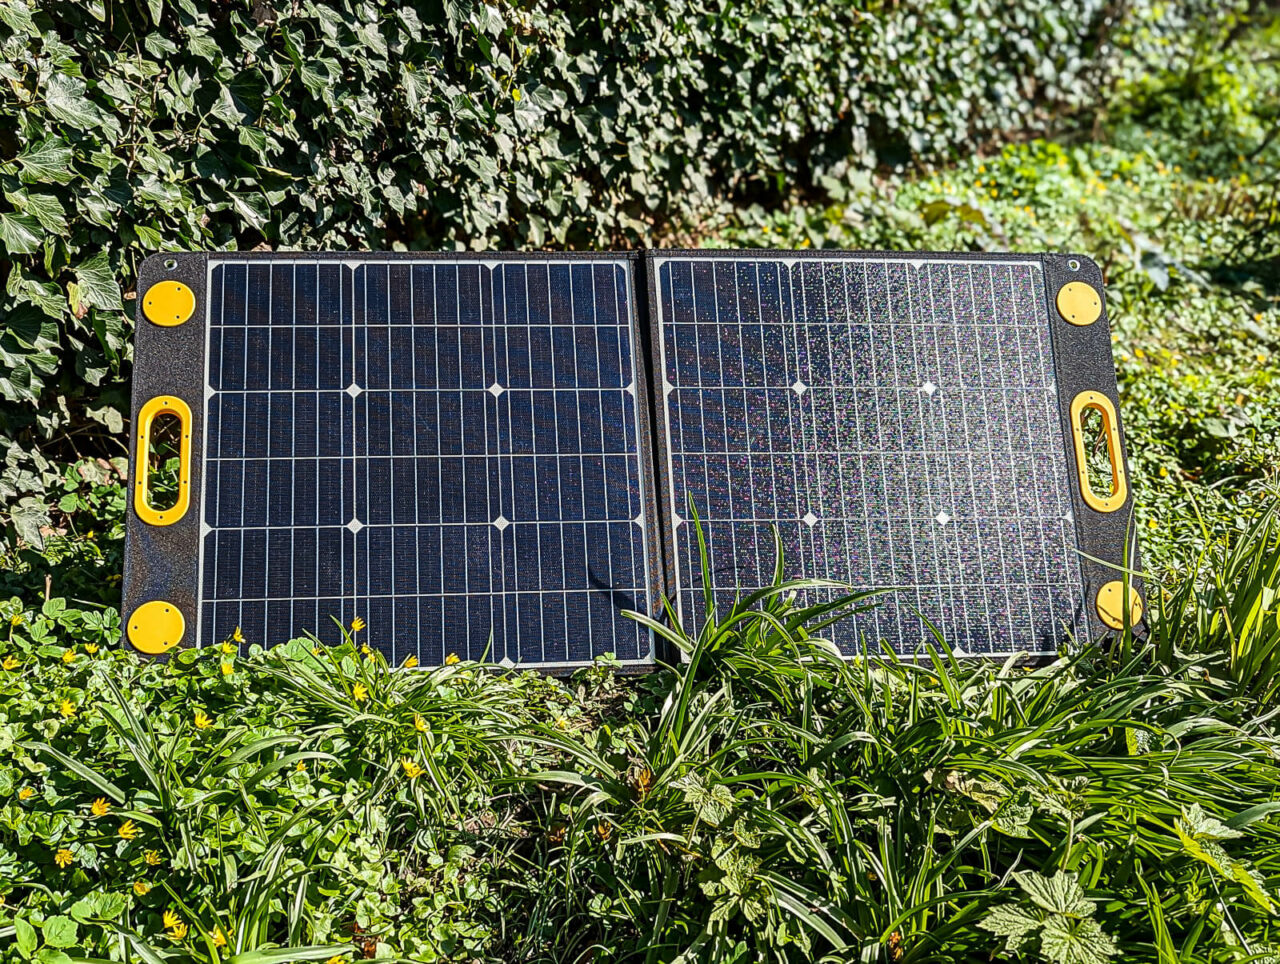 Togo Power 100w Advance Solar Panel Test, Aufgebaut, In Der Sonne, Frontal, Natur, Garten